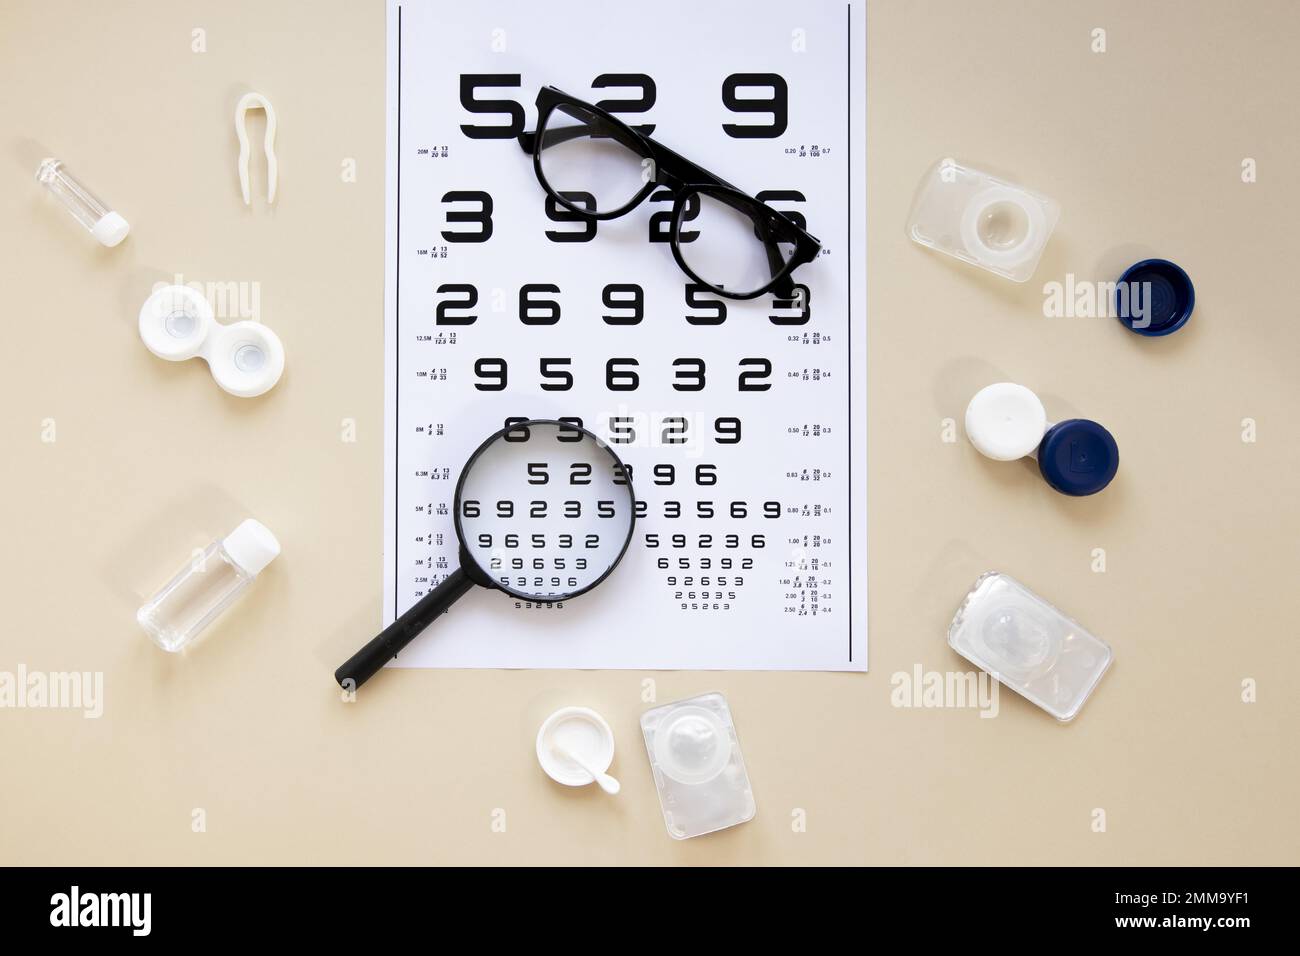 vue du dessus accessoires de soins oculaires fond beige avec tableau des numéros. Résolution et superbe photo de haute qualité Banque D'Images